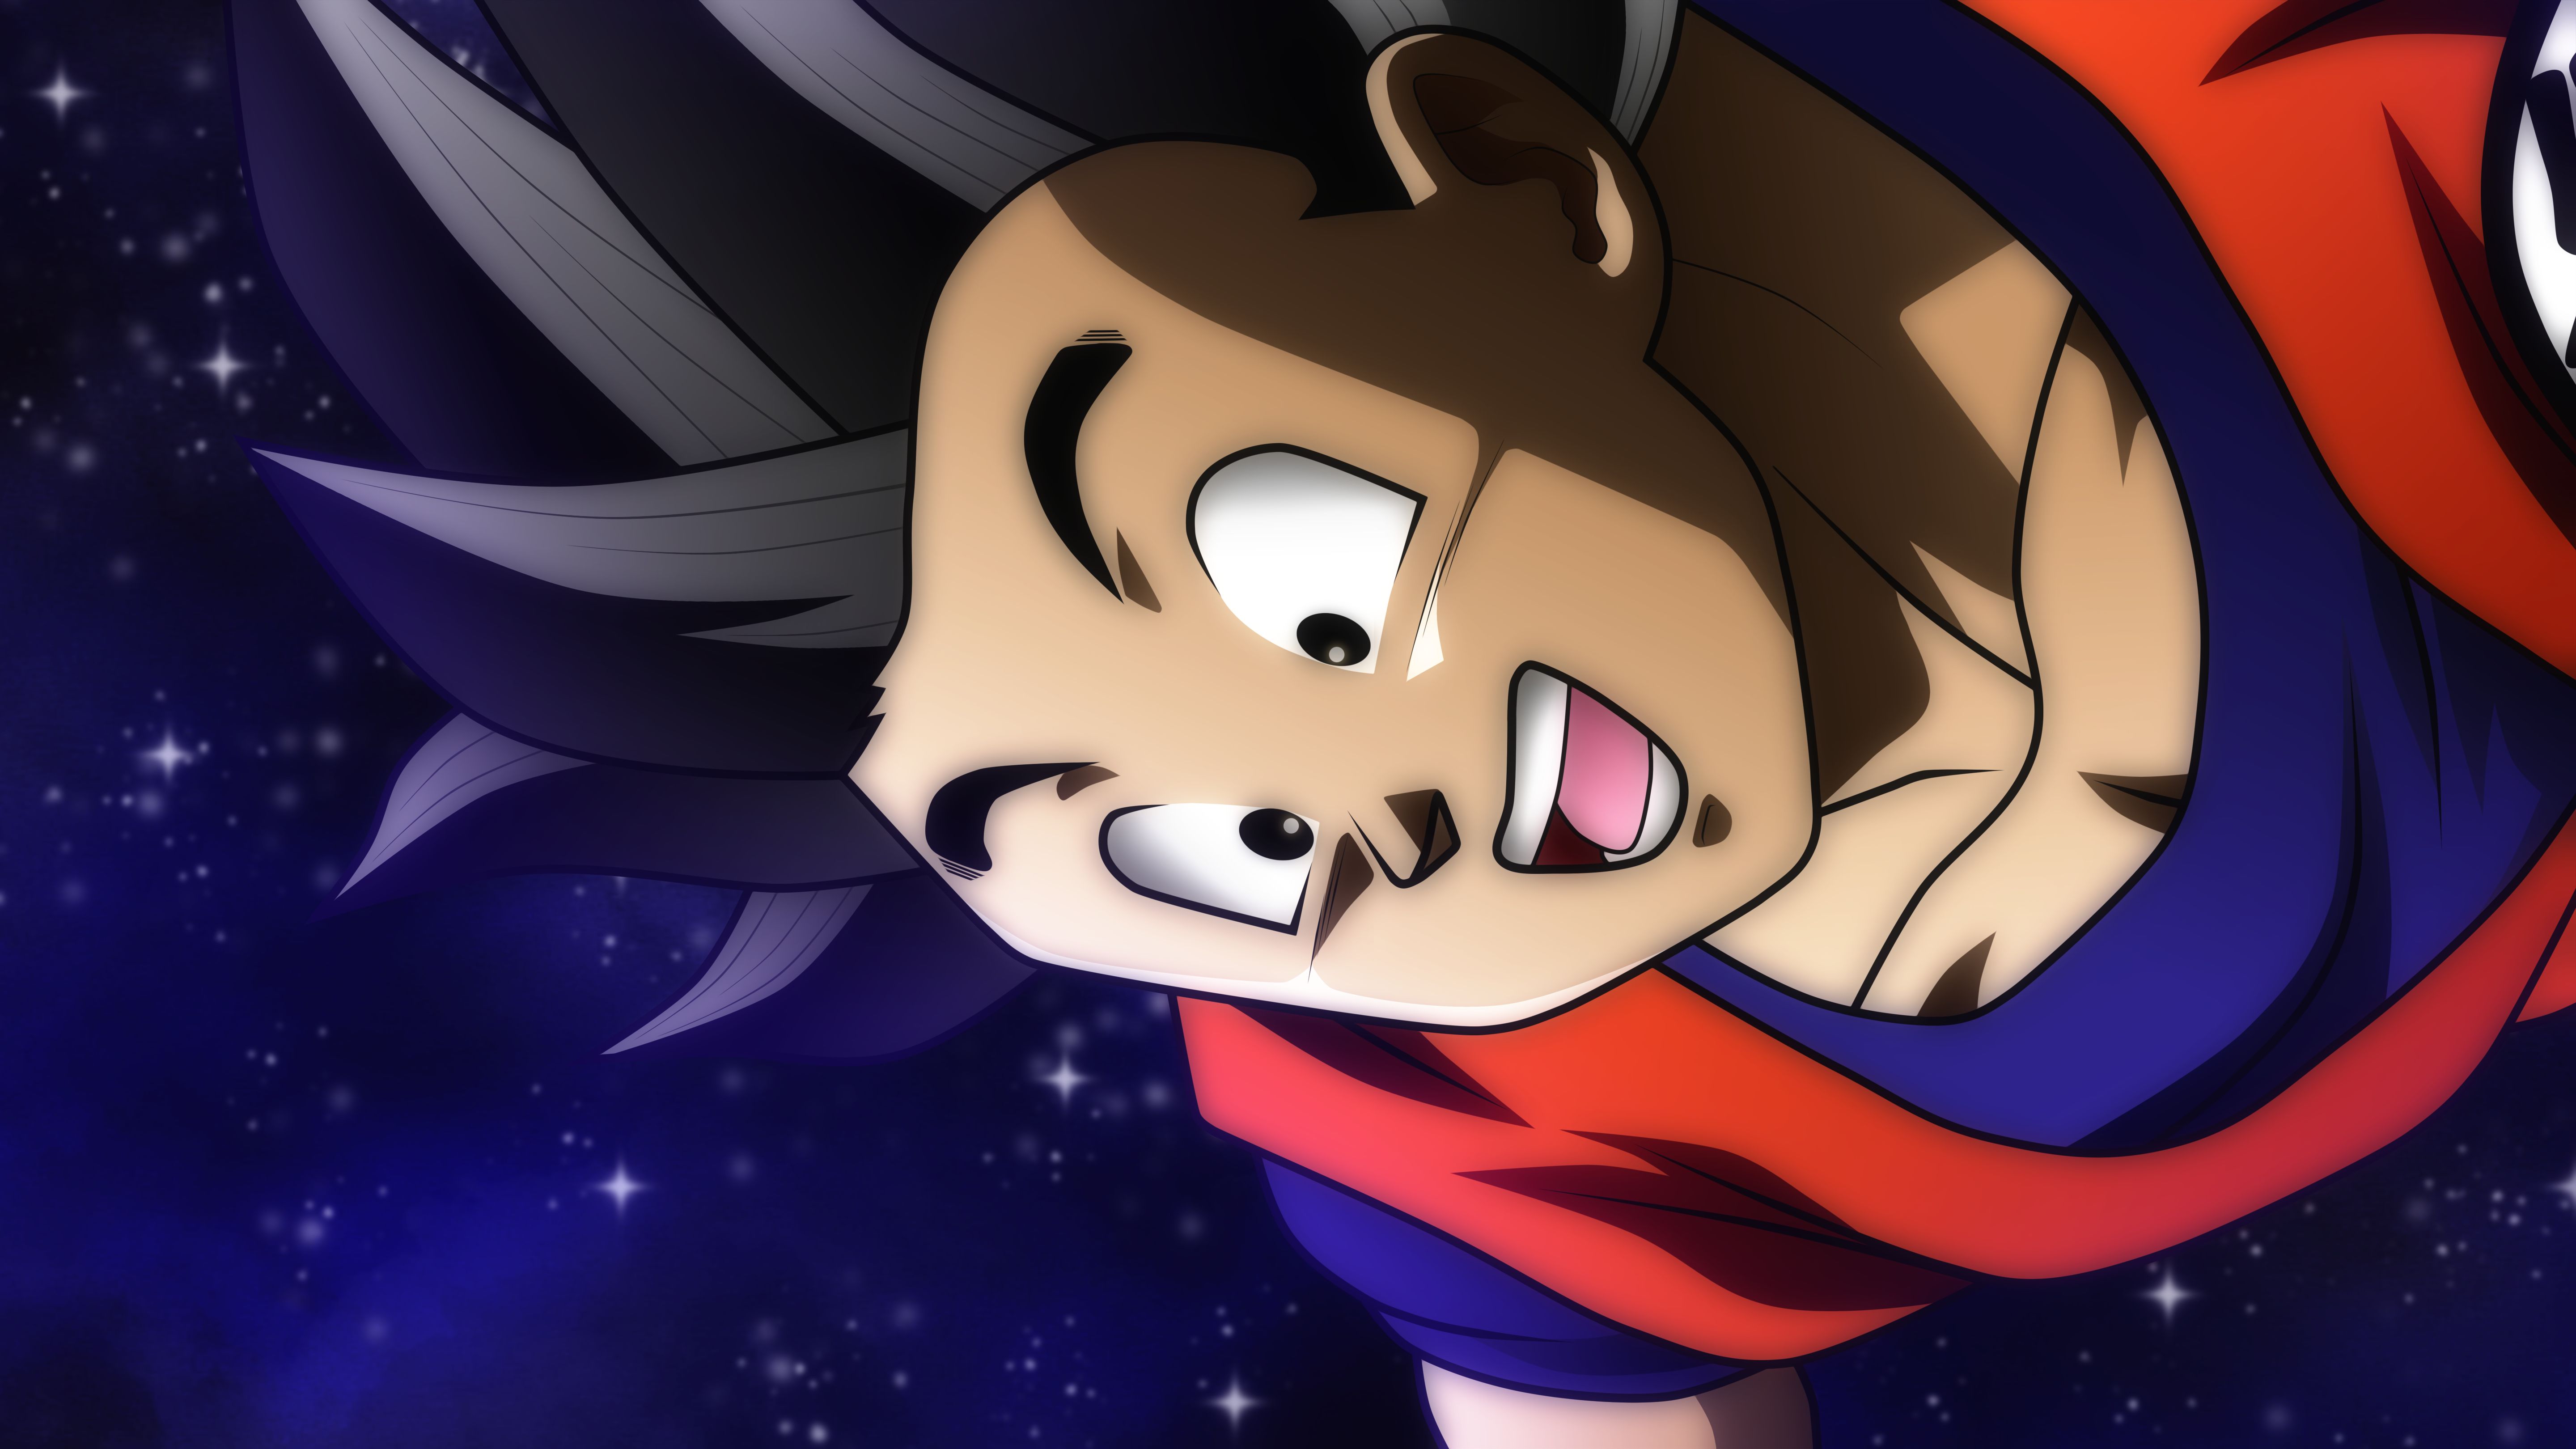 Download mobile wallpaper Anime, Dragon Ball, Goku for free.